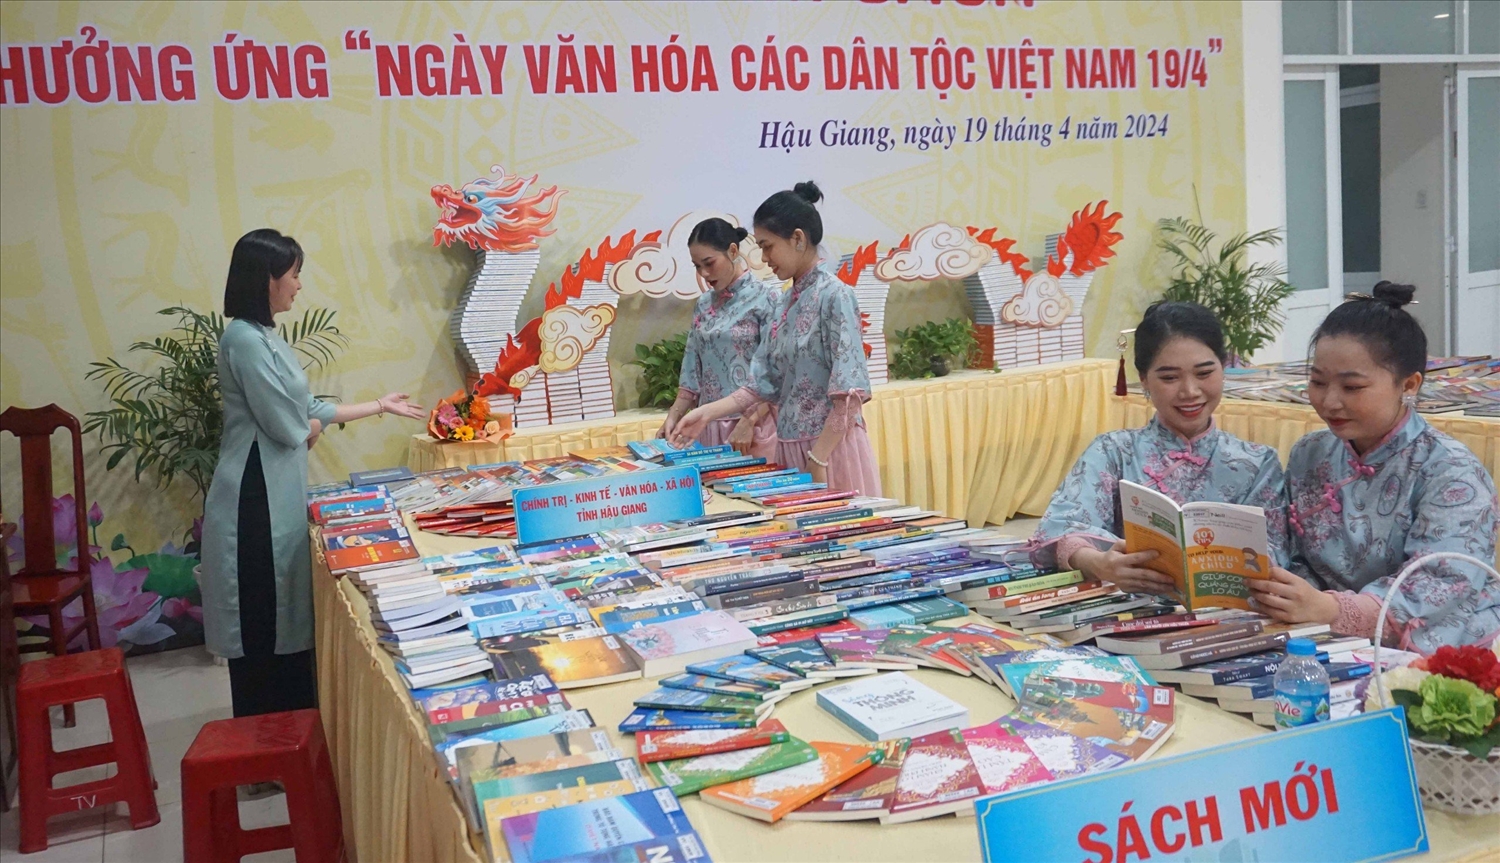 Ngoài việc được thưởng thức các tiết mục văn nghệ đặc sắc, Các đại biểu đến tham dự buổi Liên hoan Nghệ thuật các dân tộc tỉnh Hậu Giang năm 2024 còn tìm kiếm cho mình những quyển sách hay, bổ ích 